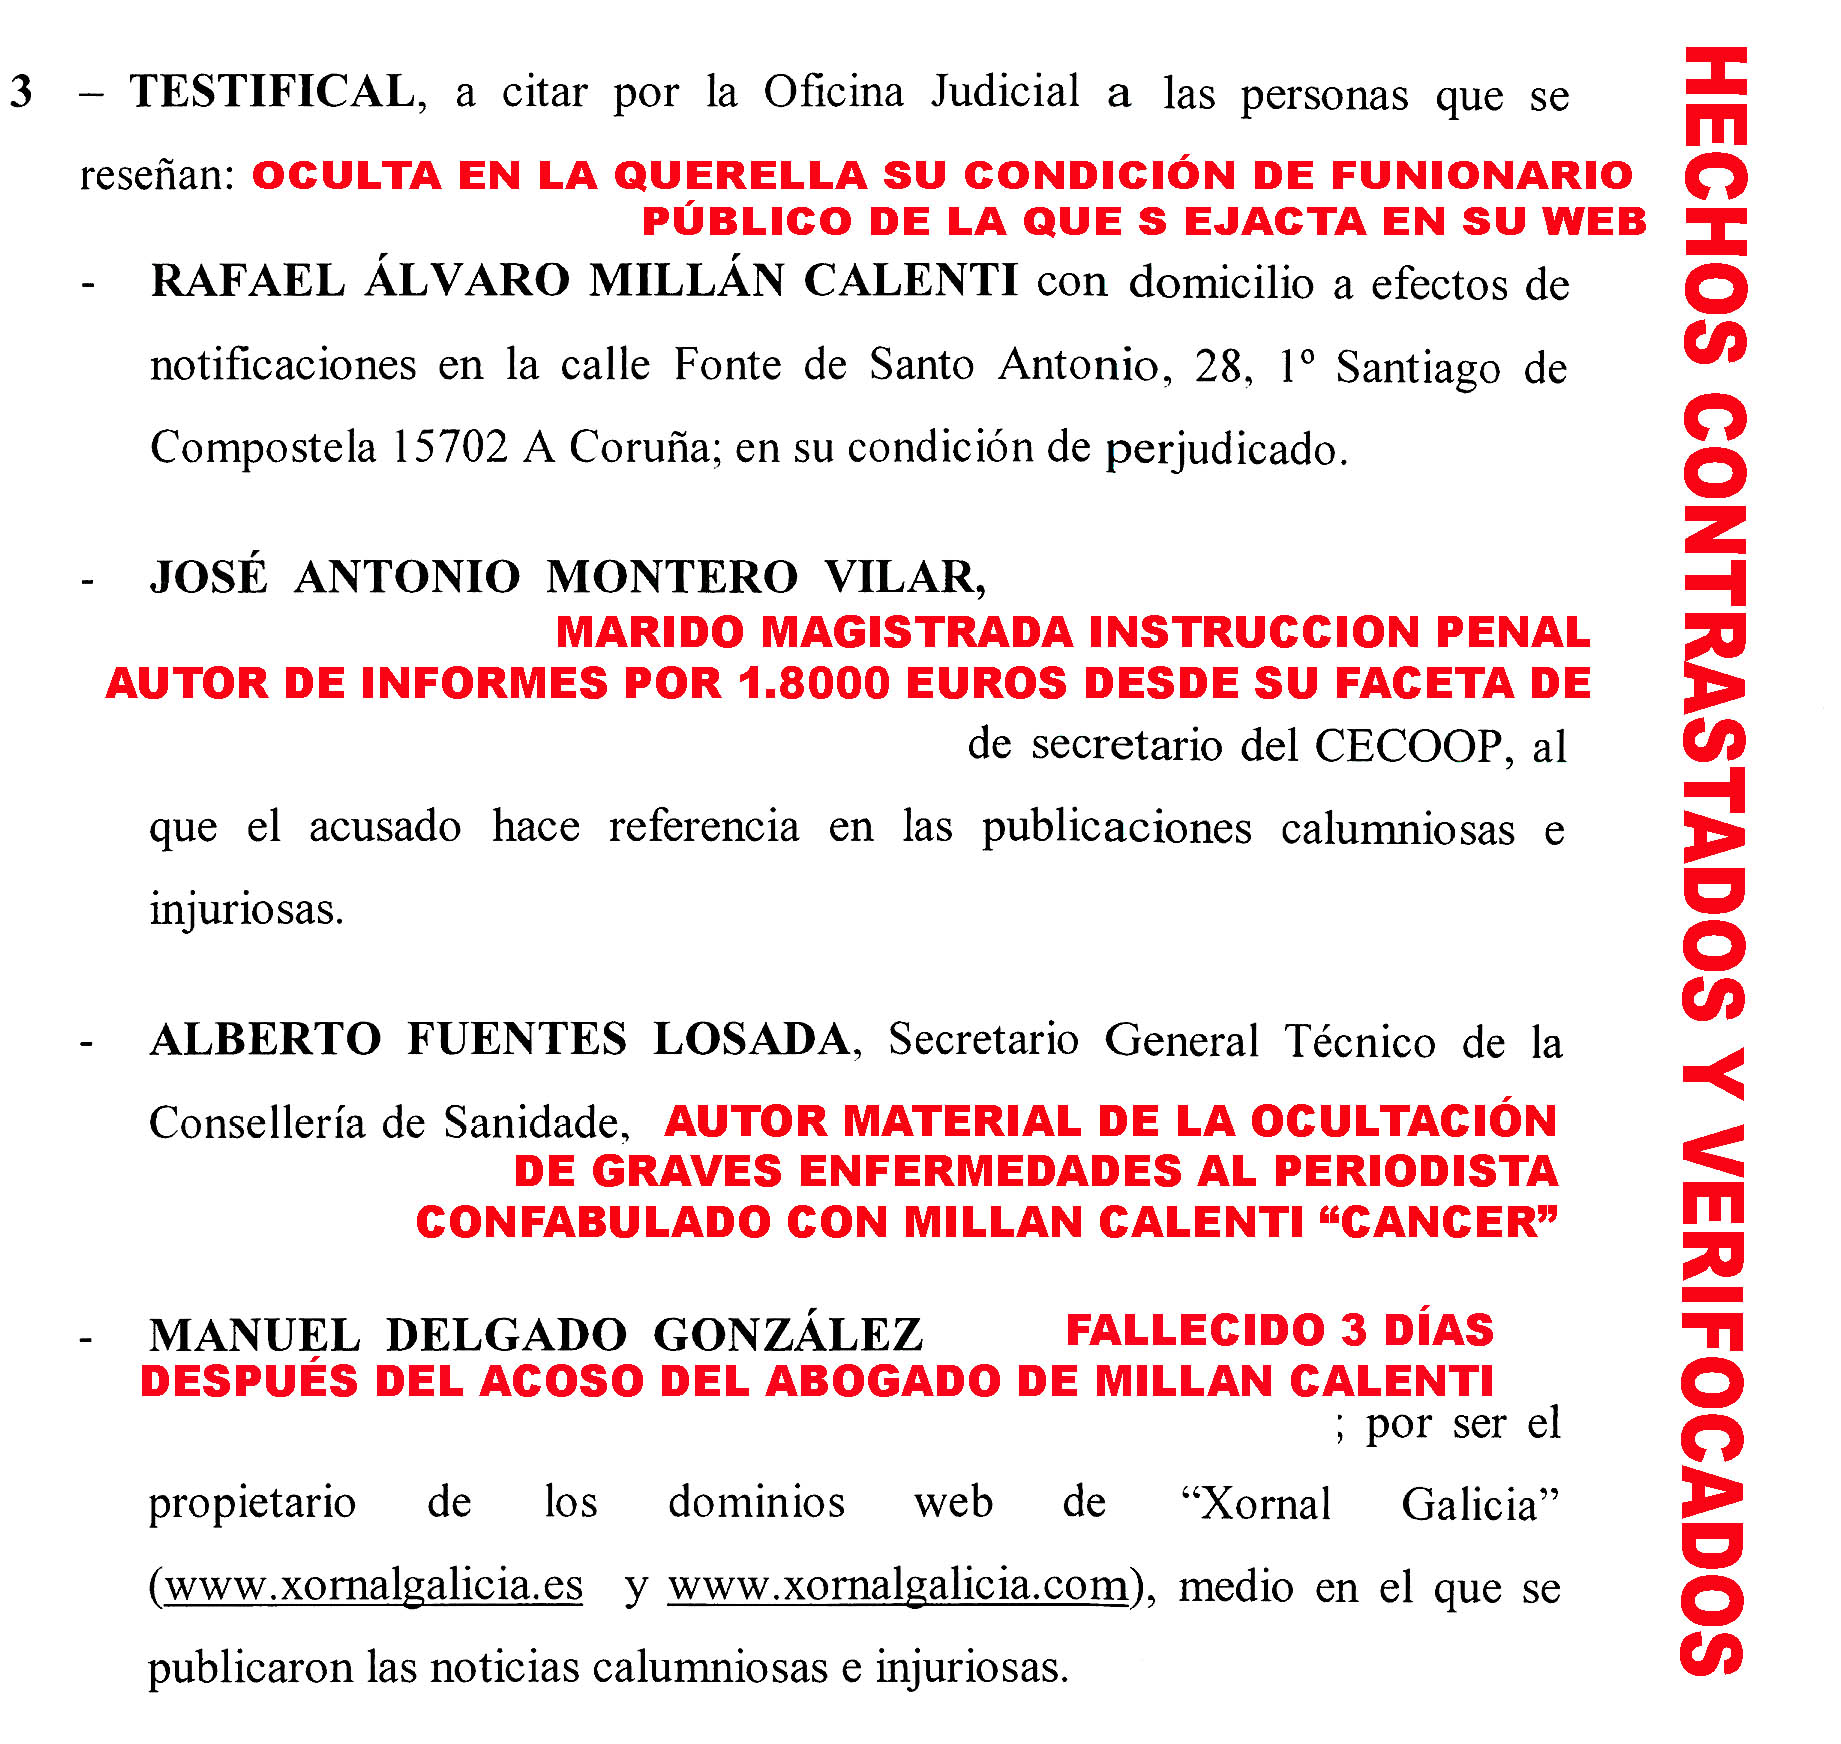 Xornal Galicia - Acoso y ataque a la Libertad de Expresión encadenado de  querellas criminales por el mismo abogado.